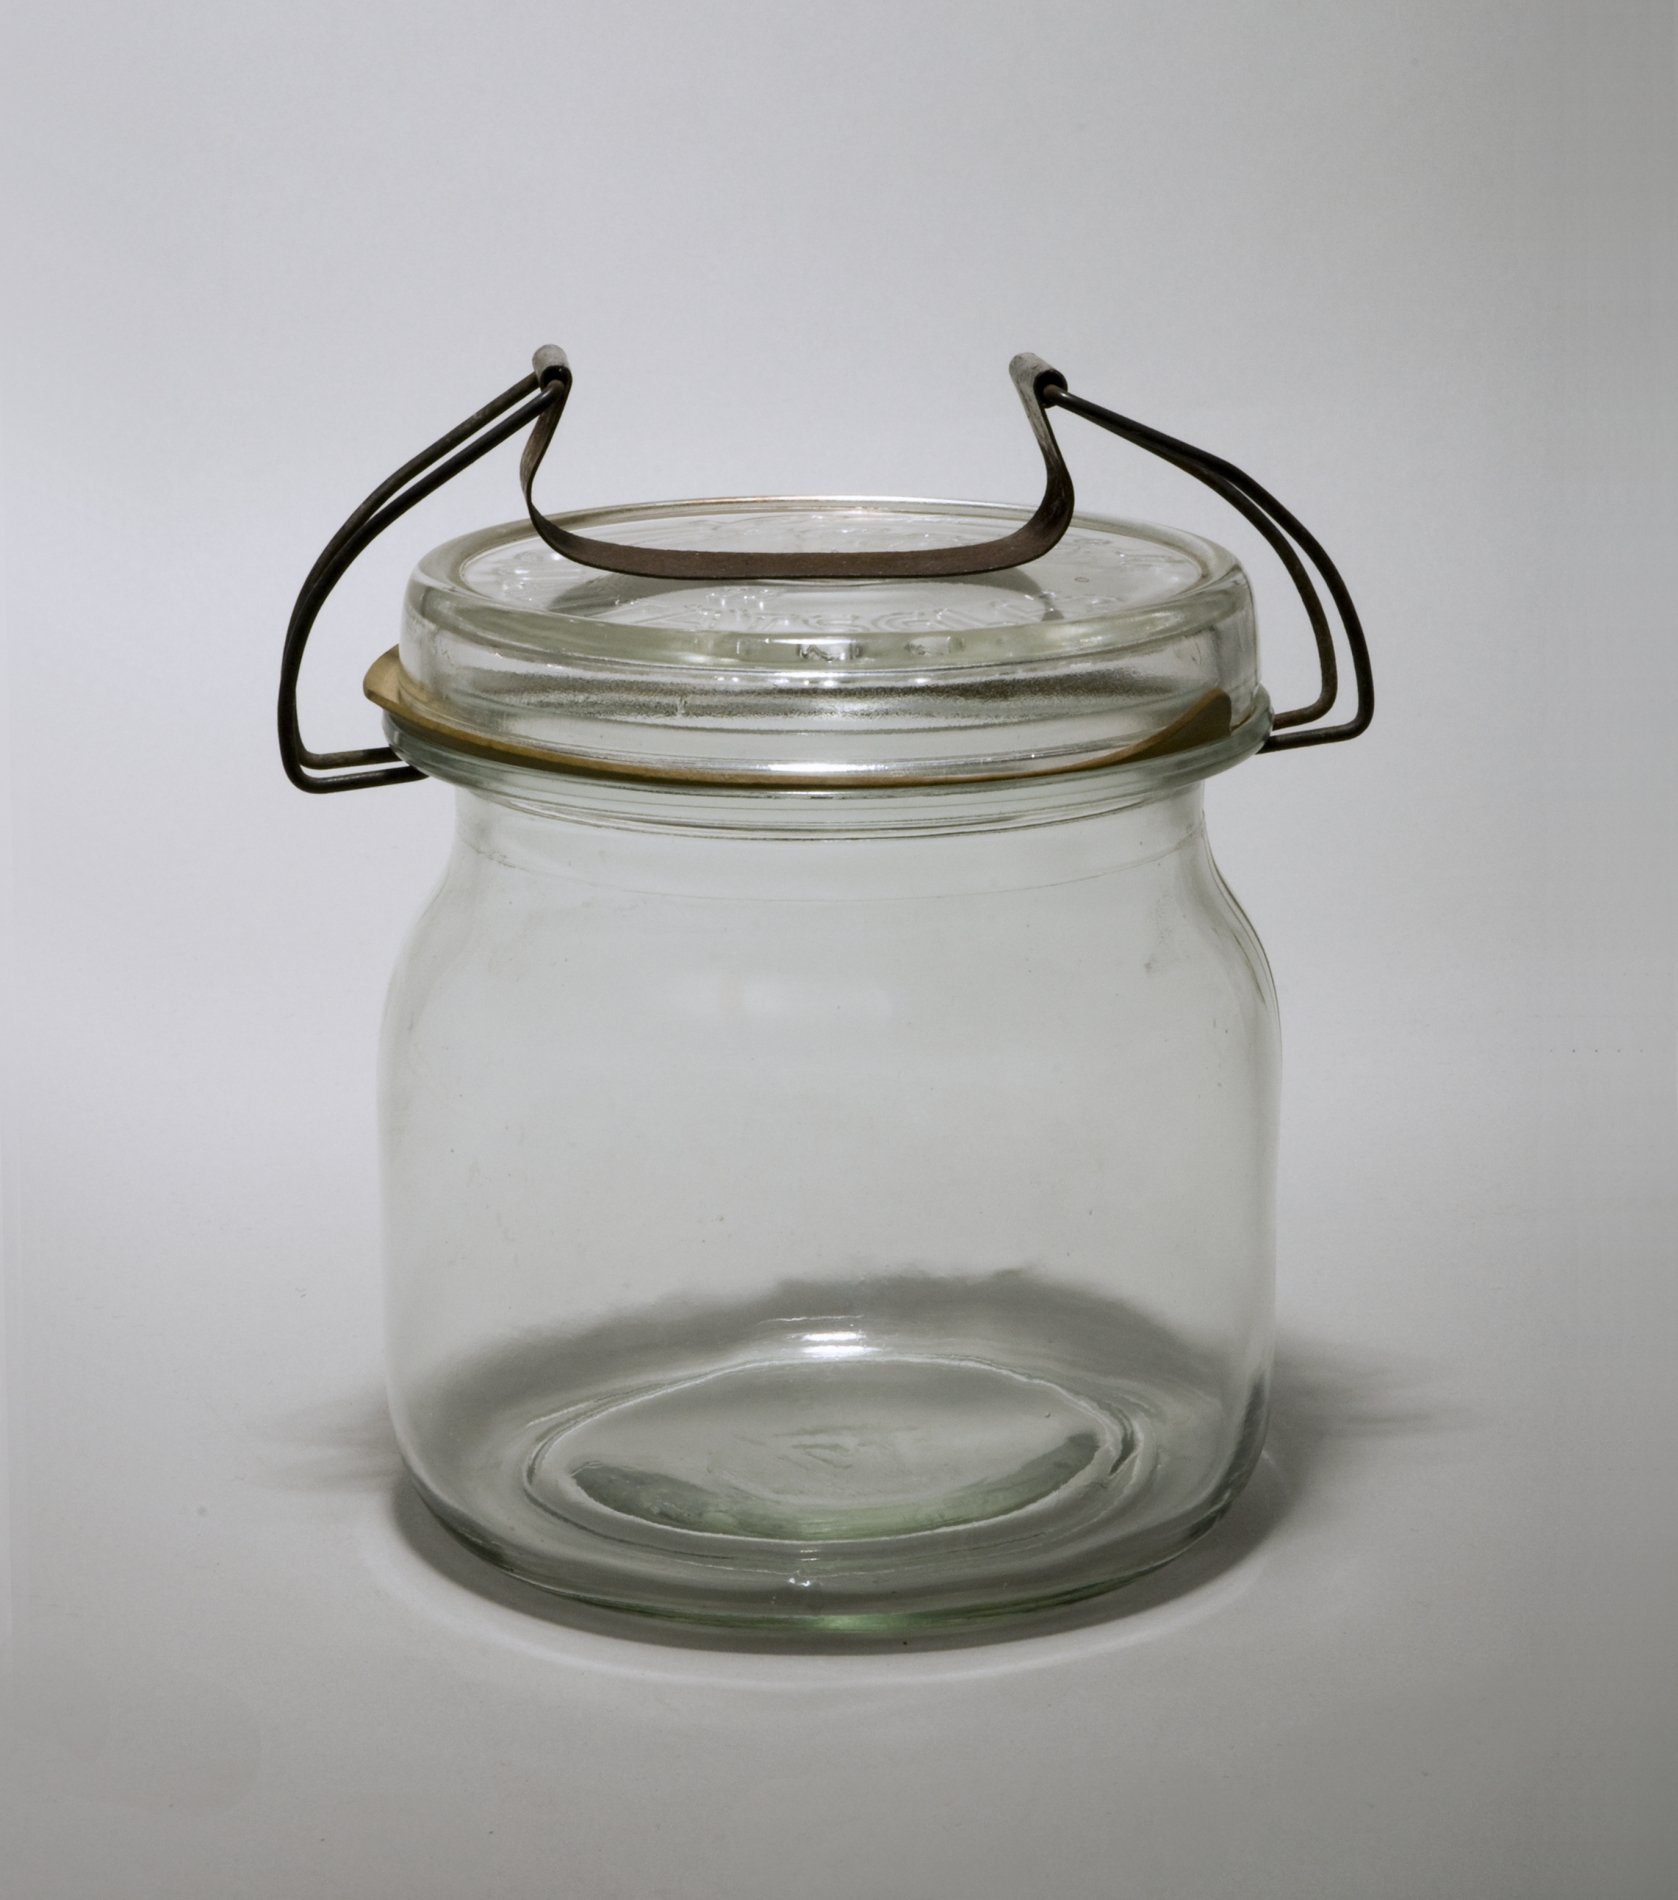 Konservenglas "Gerrix" mit Deckel und Spannklammer (Stiftung Domäne Dahlem - Landgut und Museum, Weiternutzung nur mit Genehmigung des Museums CC BY-NC-SA)